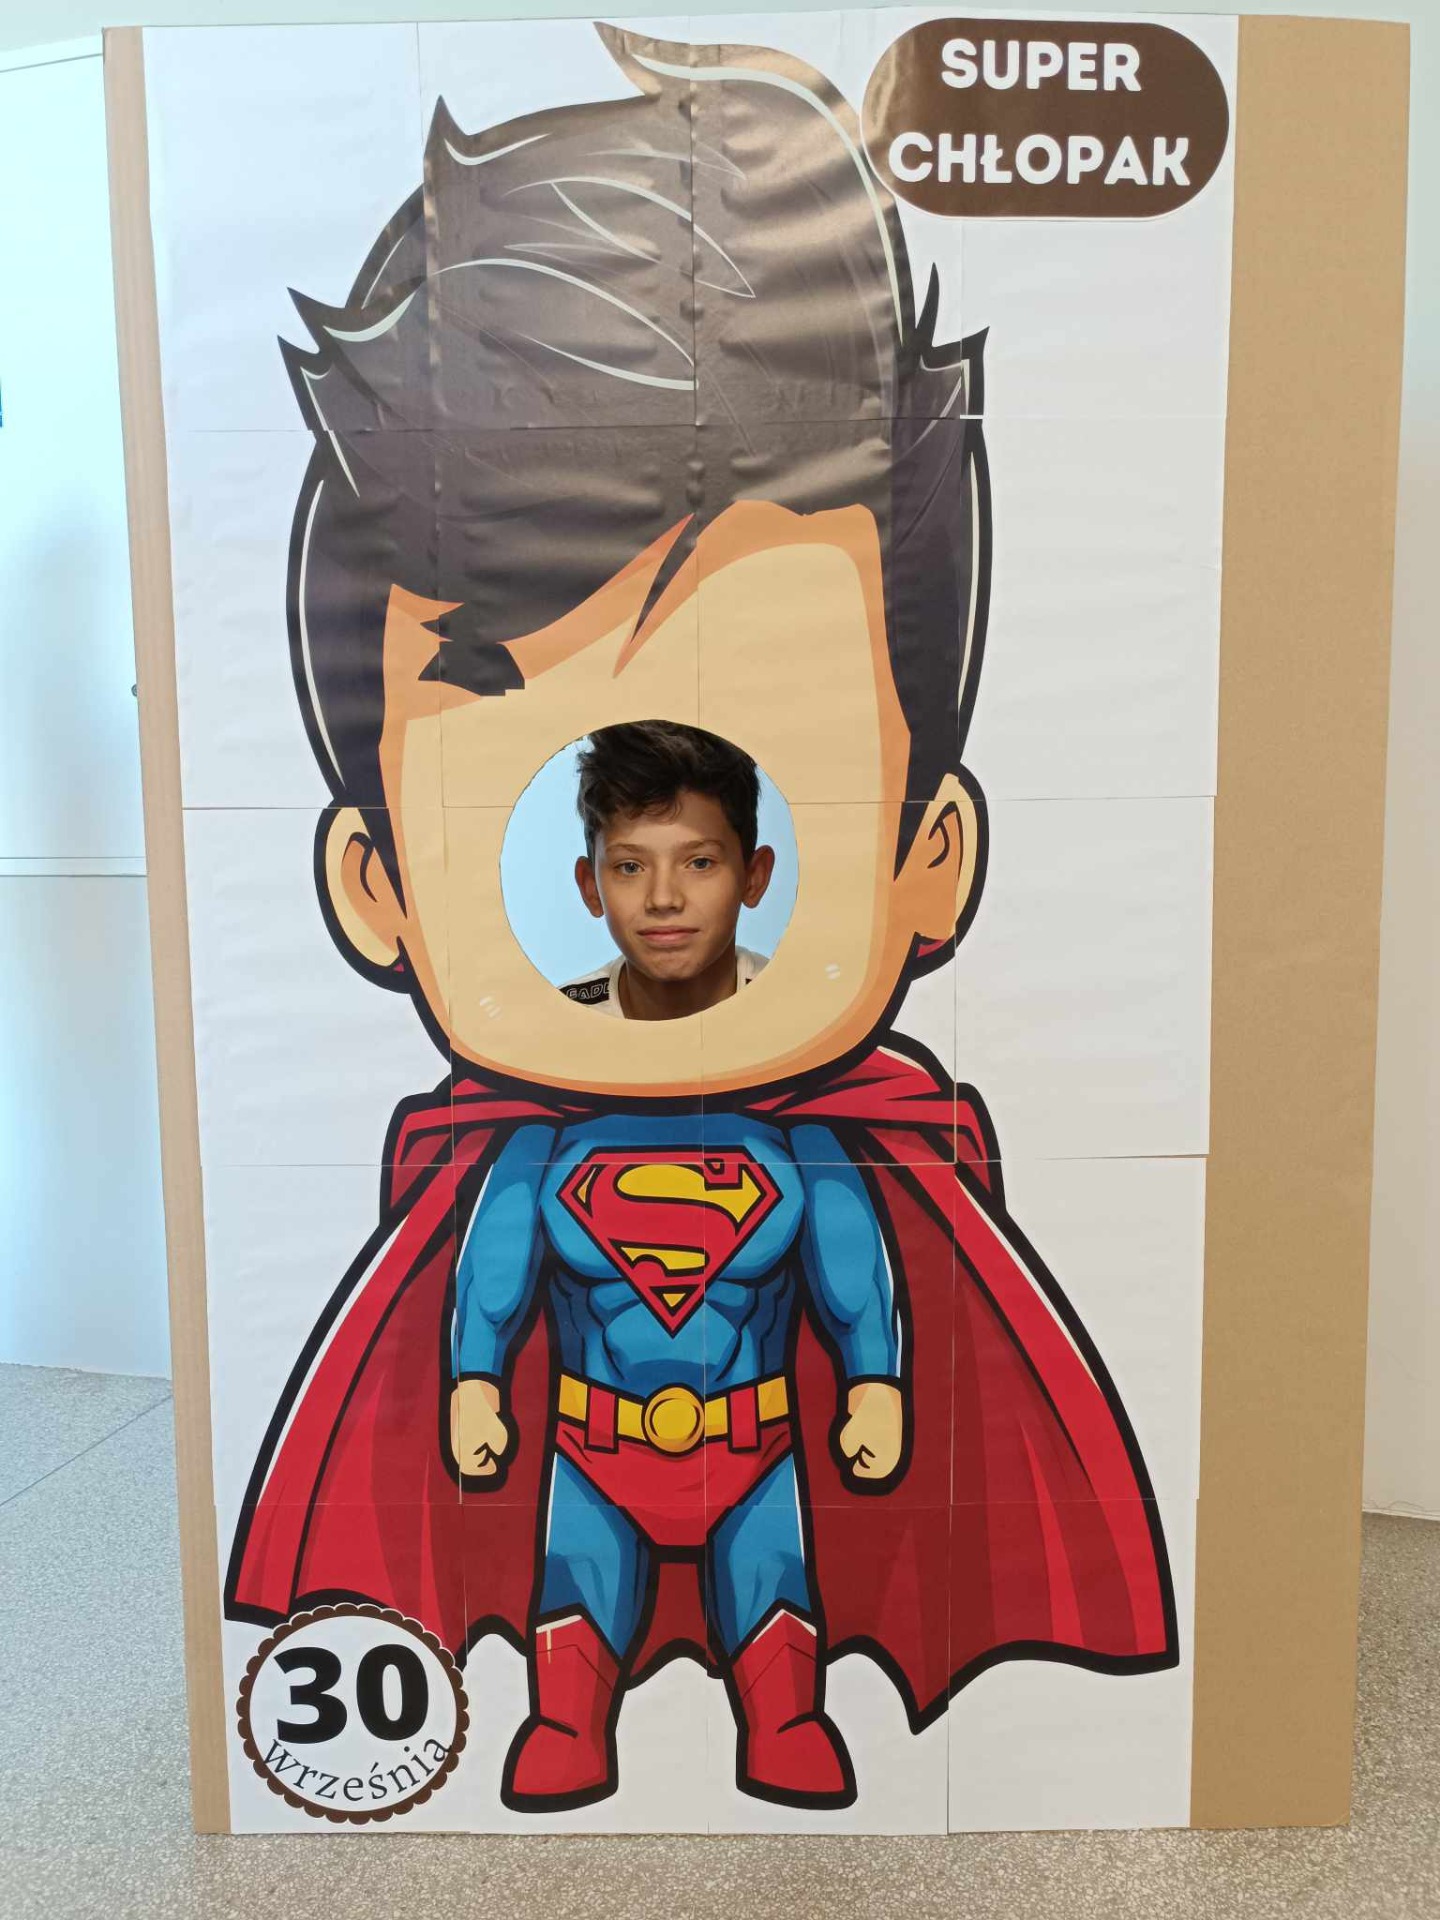 Super Chłopak "Dziesiątki" - Obrazek 4